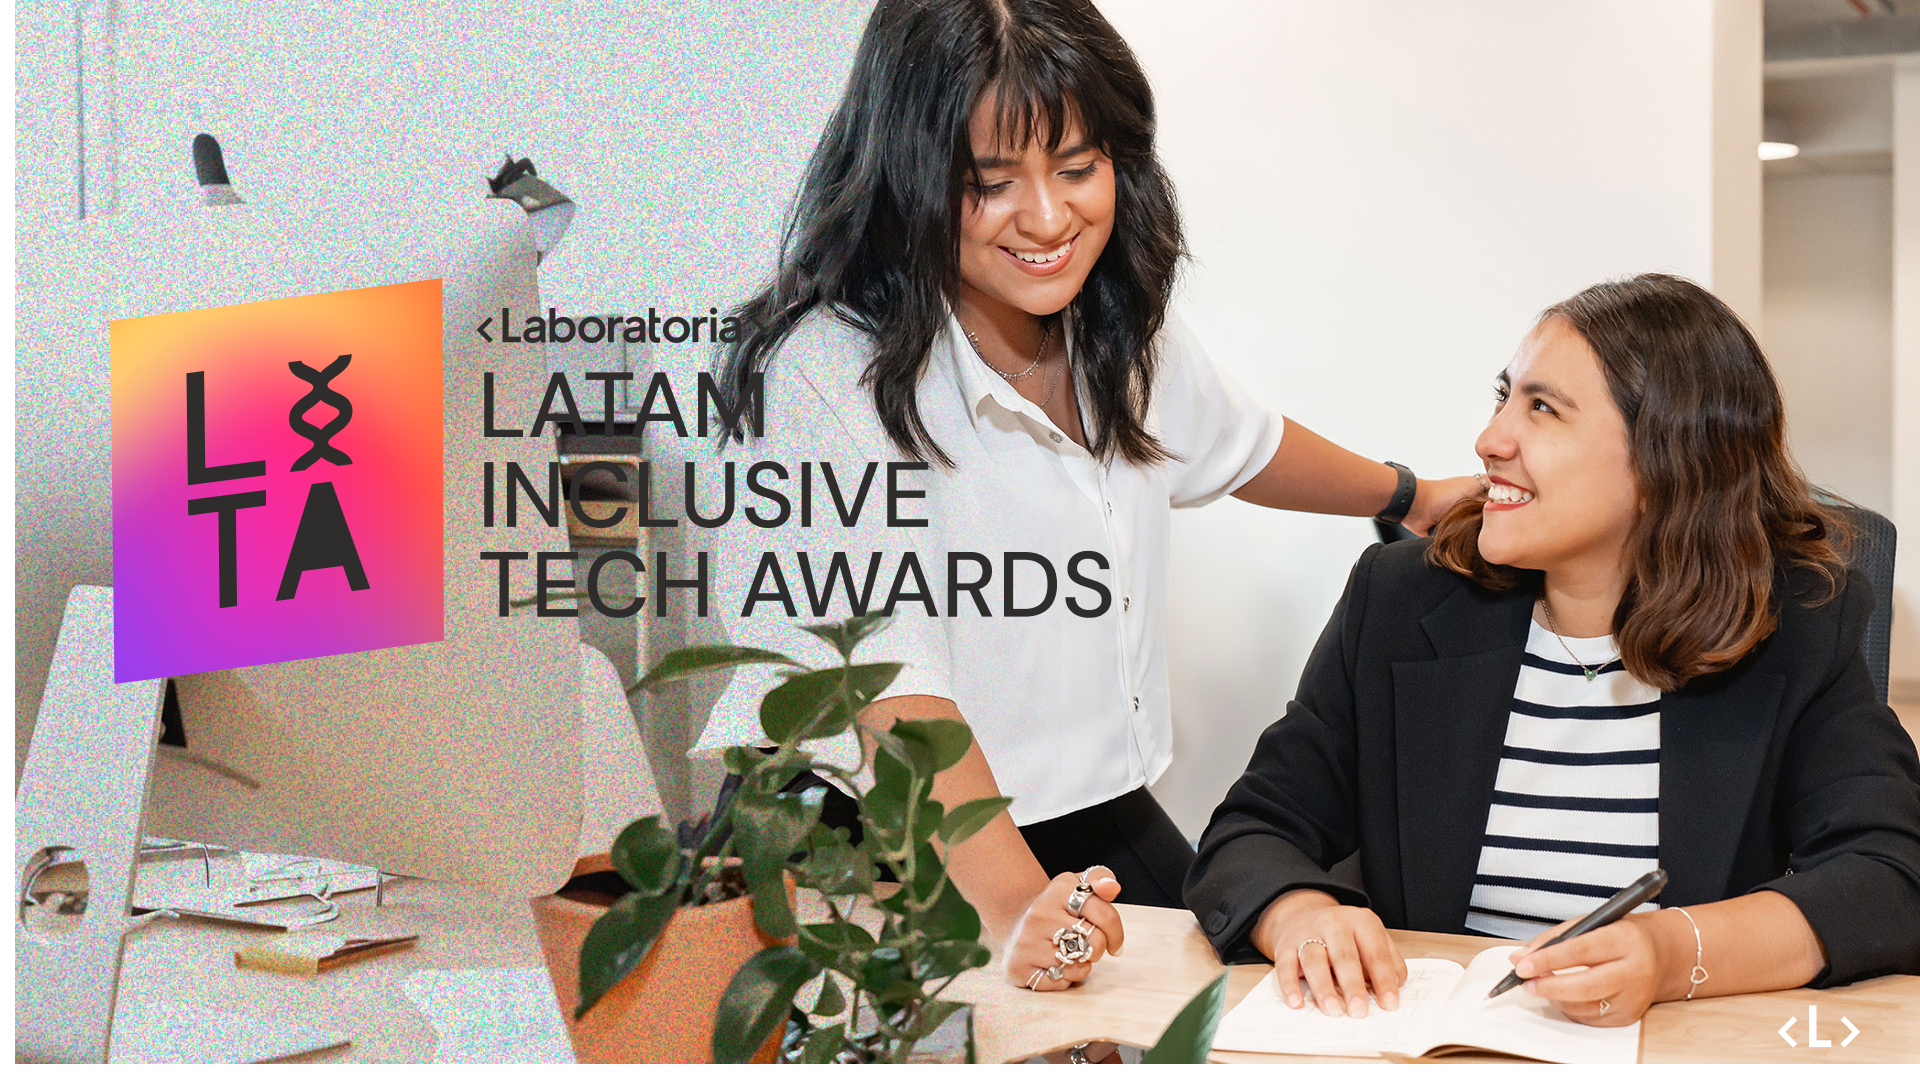 Consejos clave para ganar los Latam Inclusive Tech Awards: ¡Haz brillar tu iniciativa!